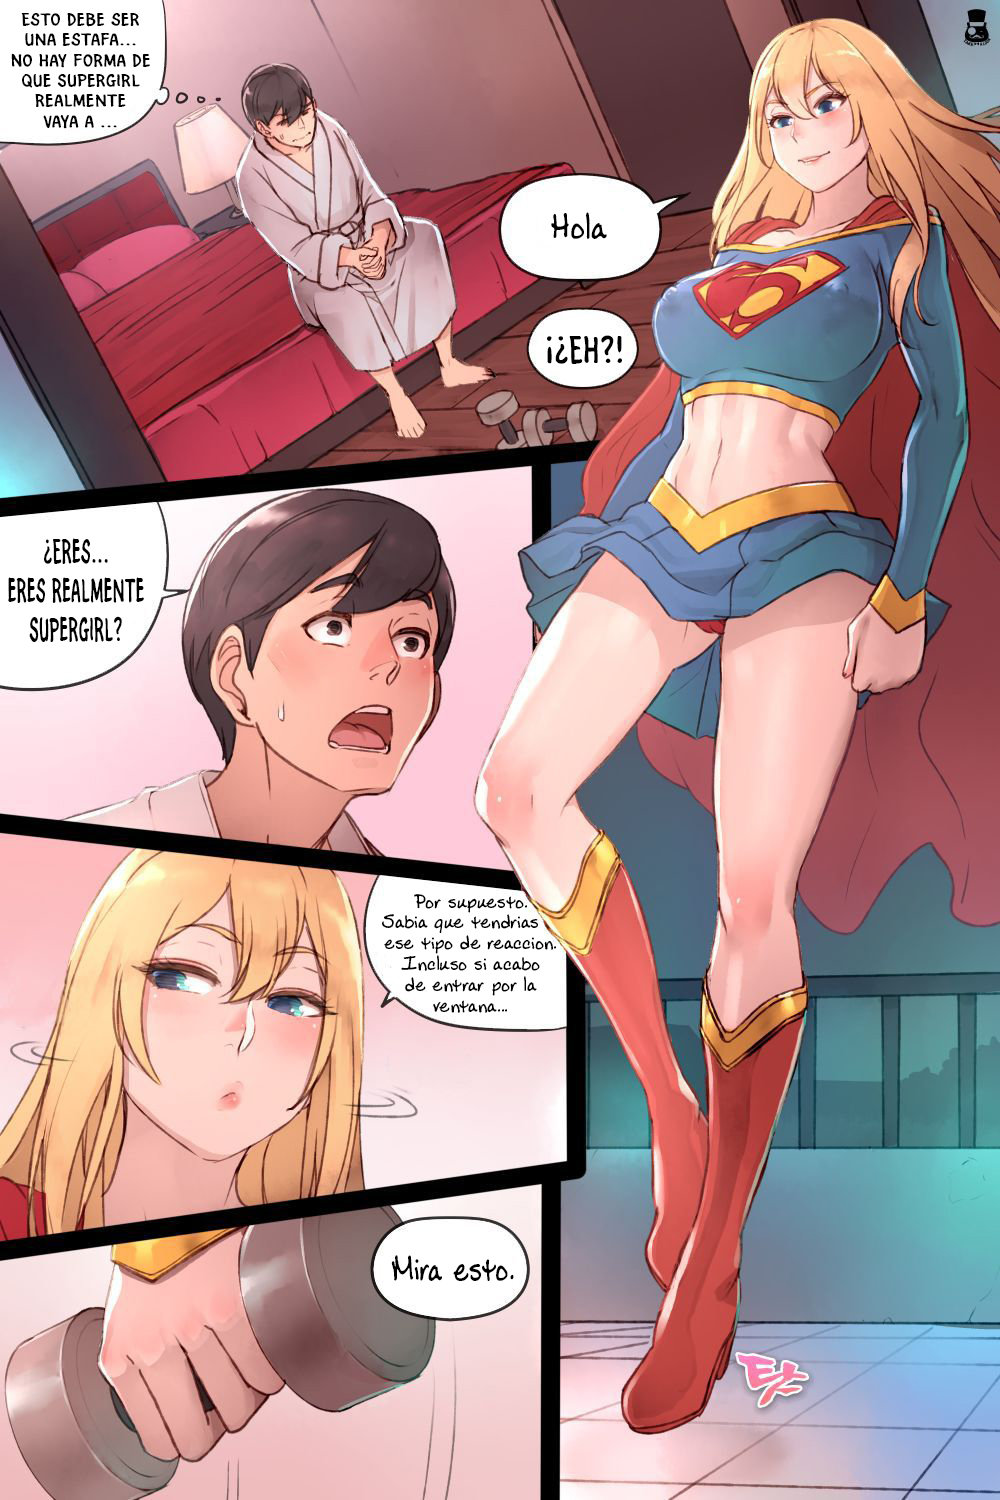 Supergirl teniendo sexo